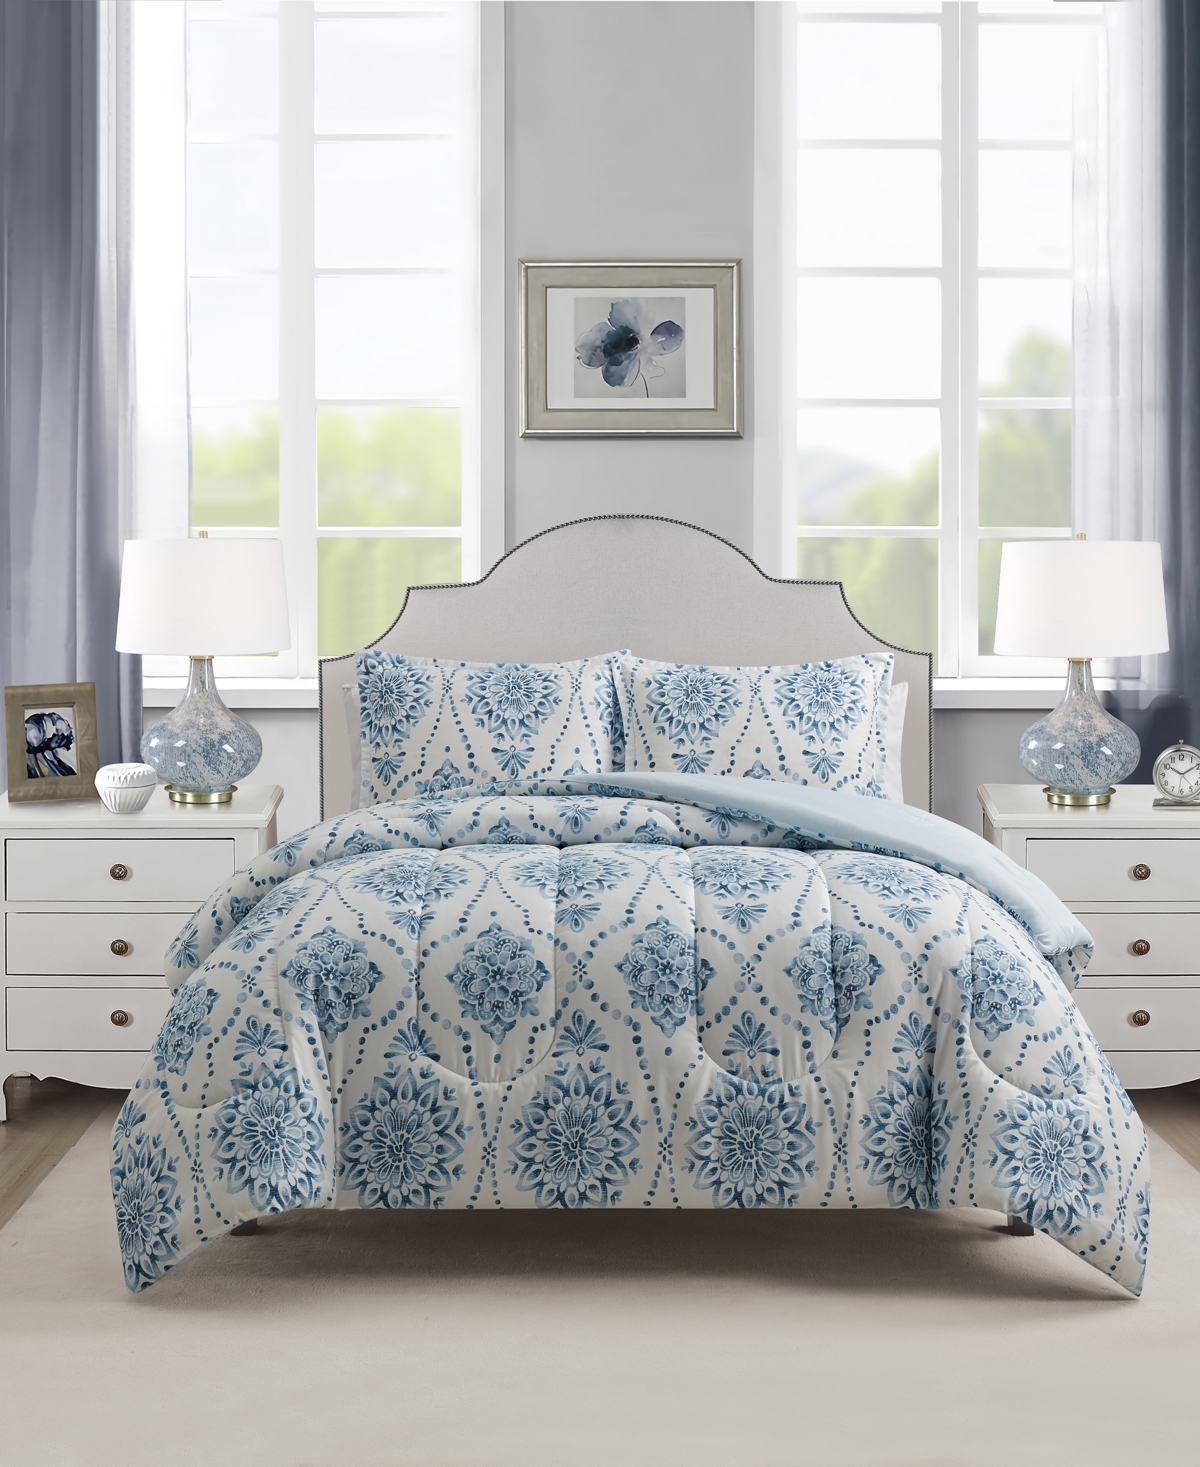 Sunham Mercer 3-pc. Comforter Set, Created For Macy's In Blue